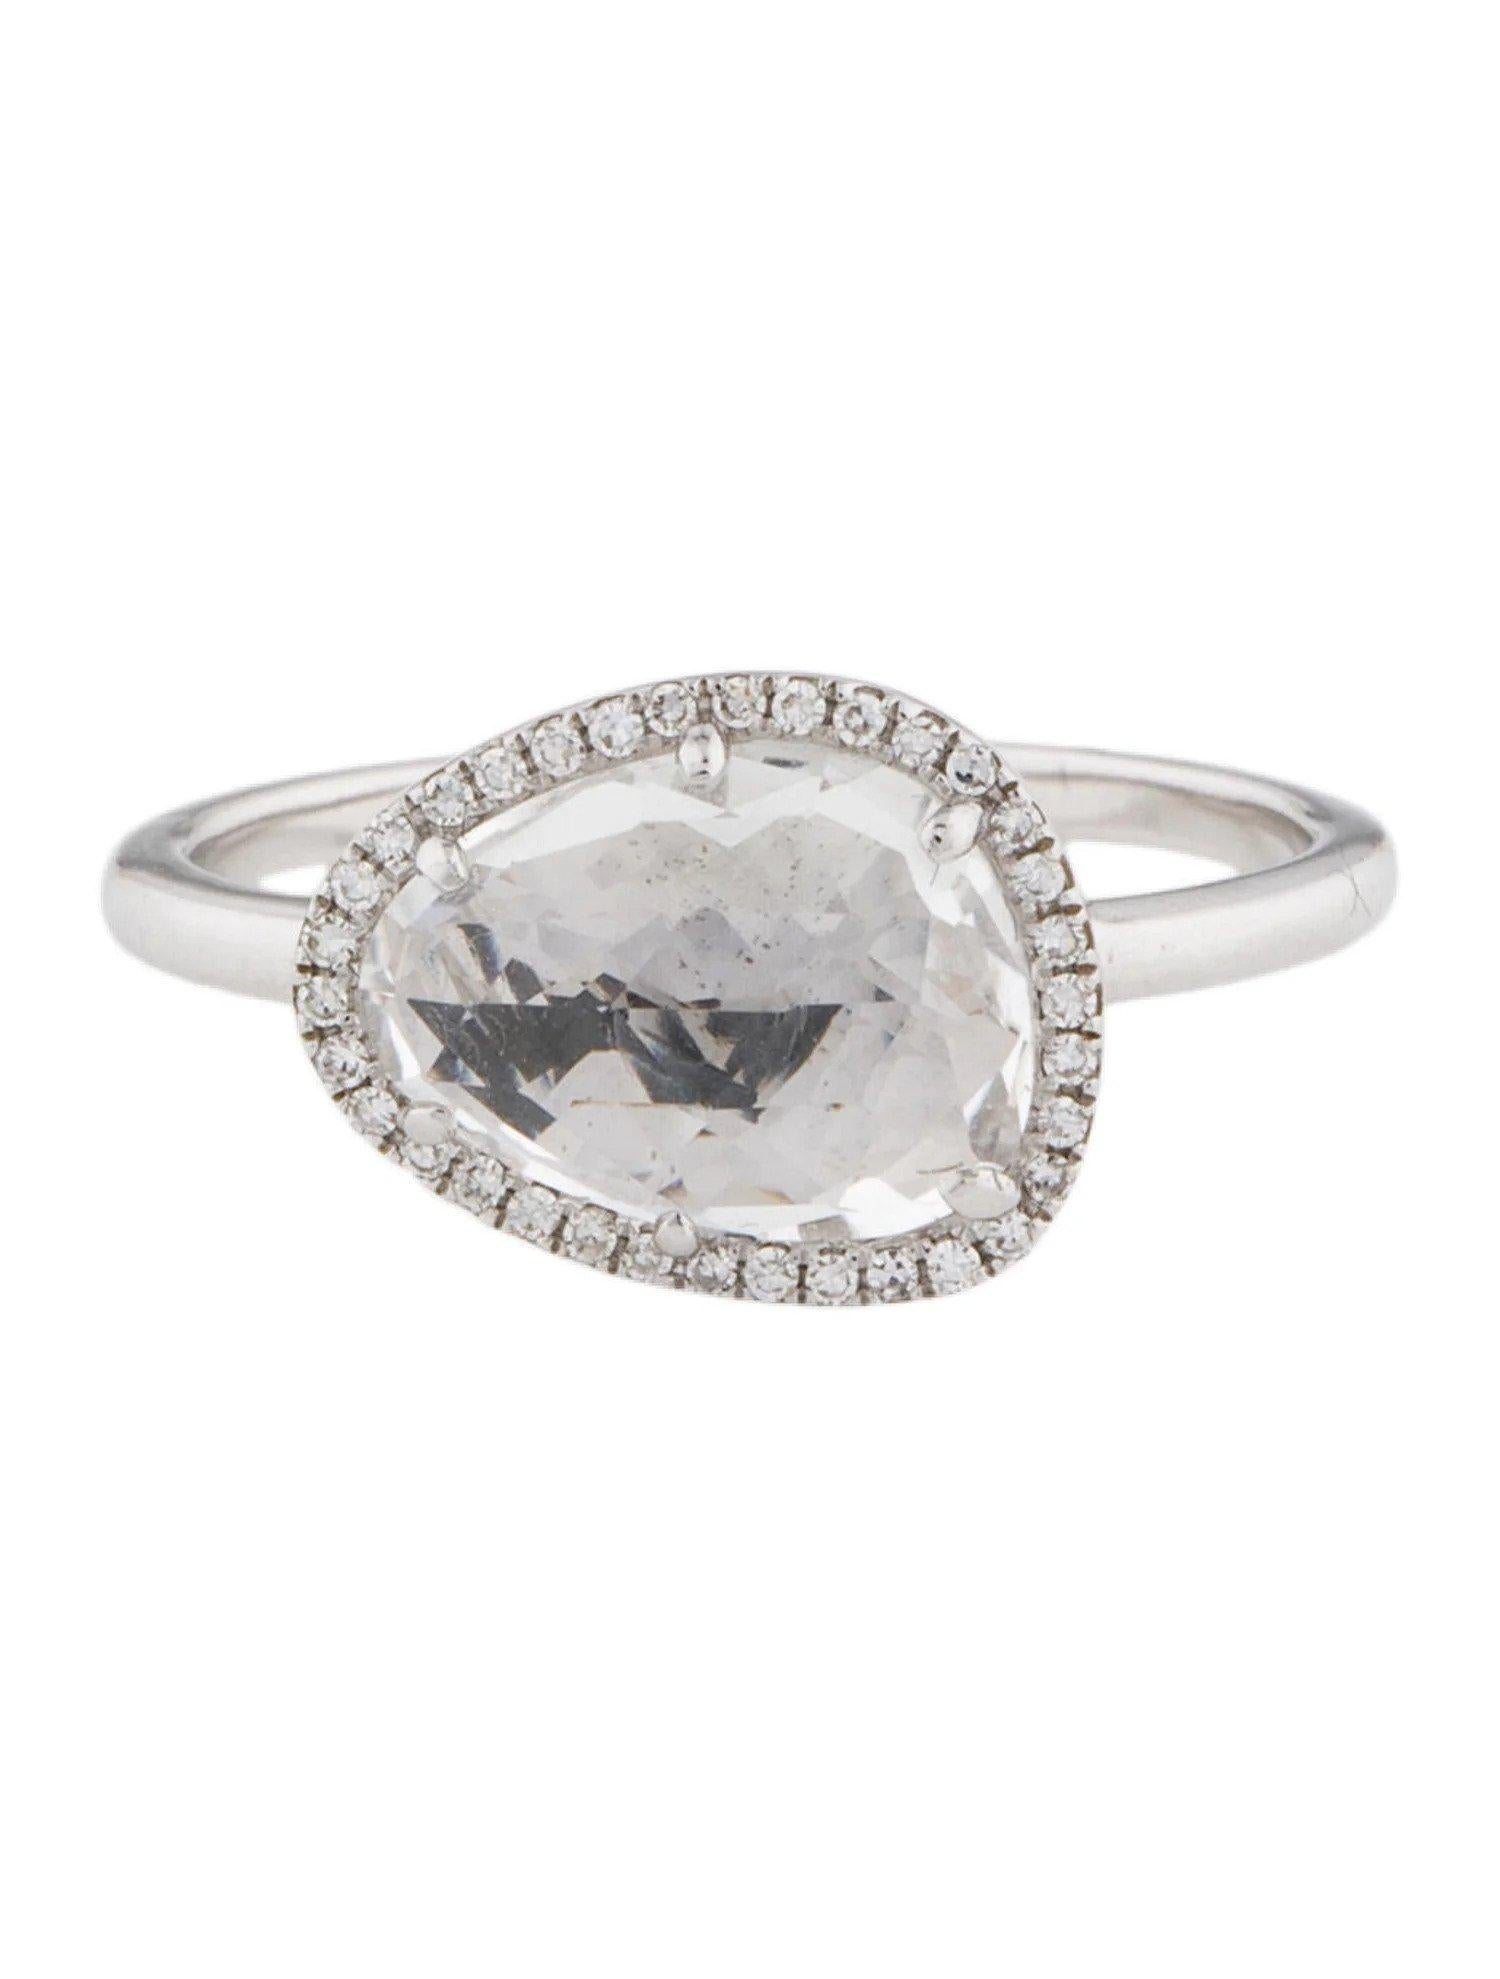 Dieser Ring aus weißem Topas und Diamanten ist ein atemberaubendes und zeitloses Accessoire, das jedem Outfit einen Hauch von Glamour und Raffinesse verleihen kann. 

Dieser Ring besteht aus einem 2,69 Karat schweren weißen Topas (12 x 9 MM) mit